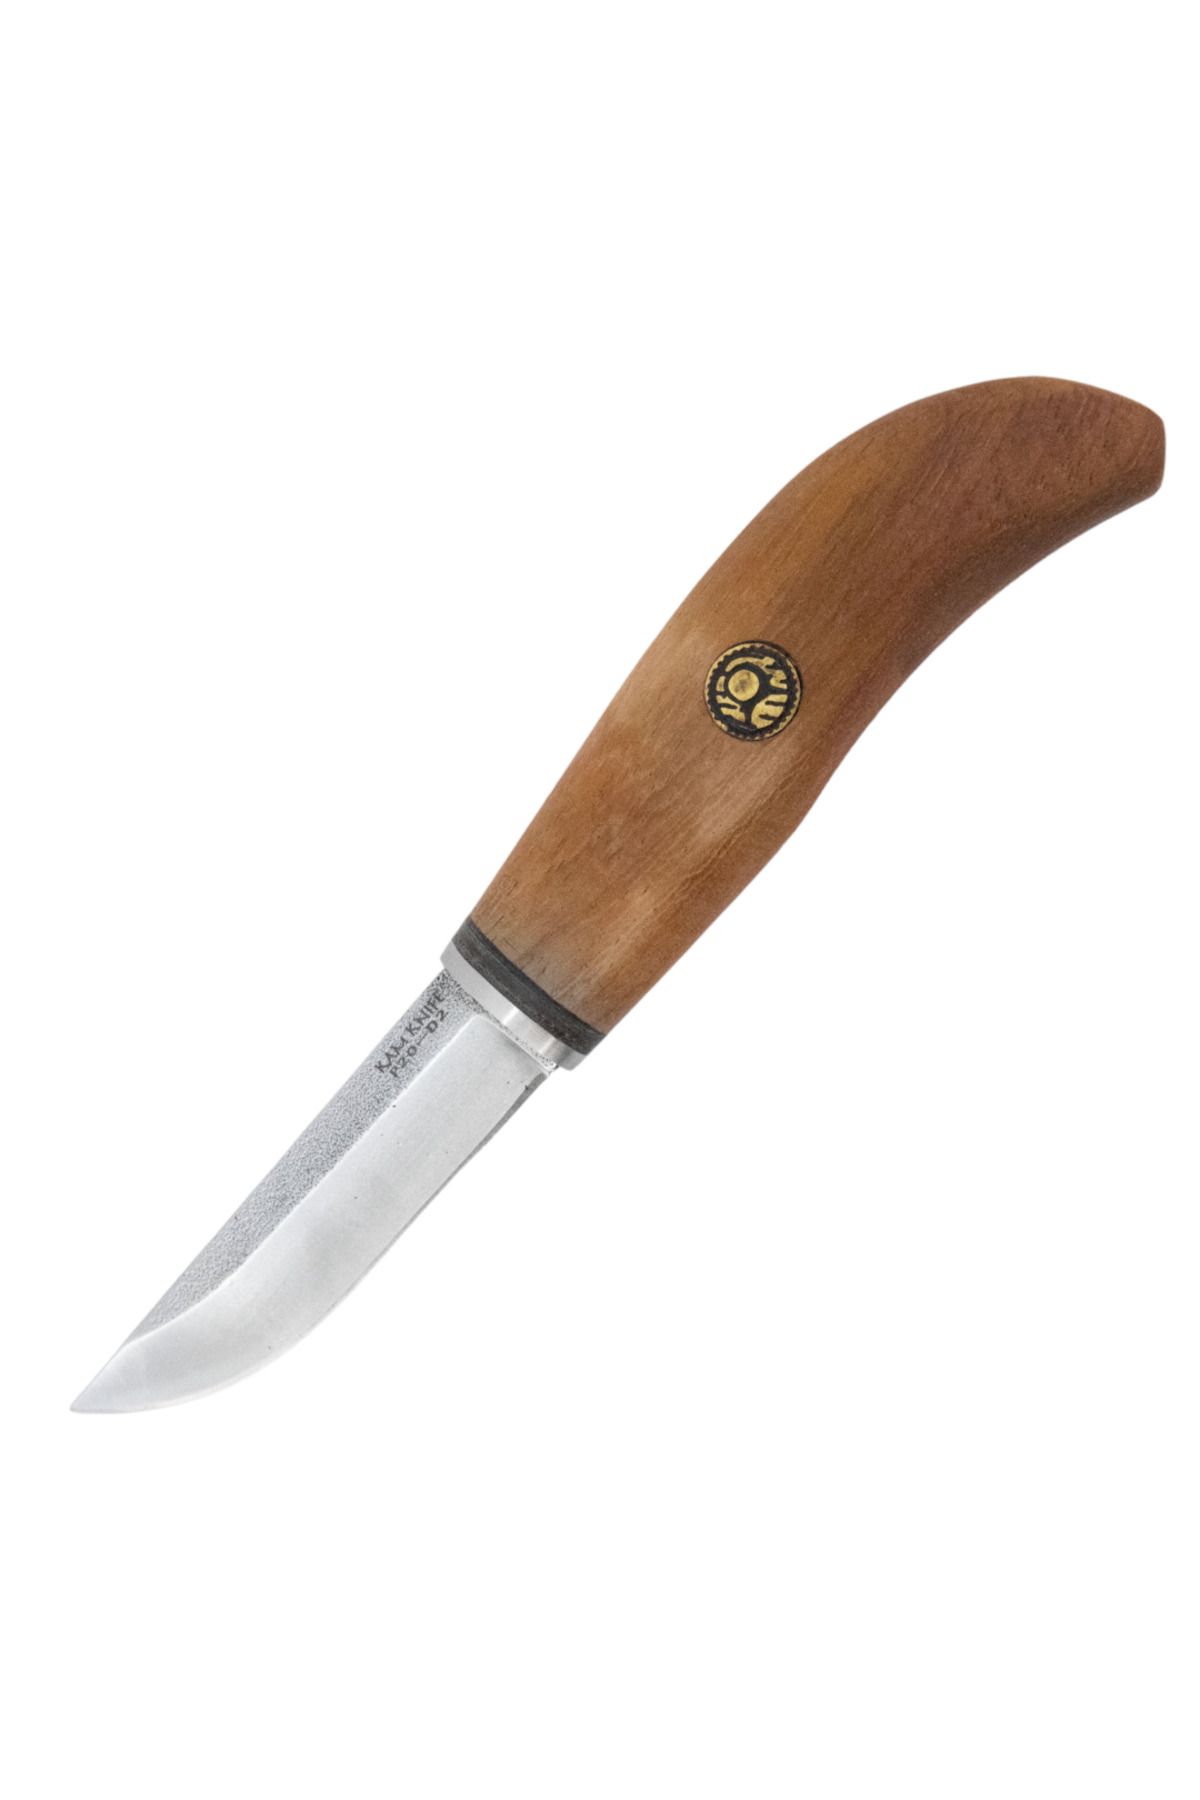 KAM KNIFE - P20 - D2 Çelik - Maun Ağaç- Kavisli Sabit Bıçak